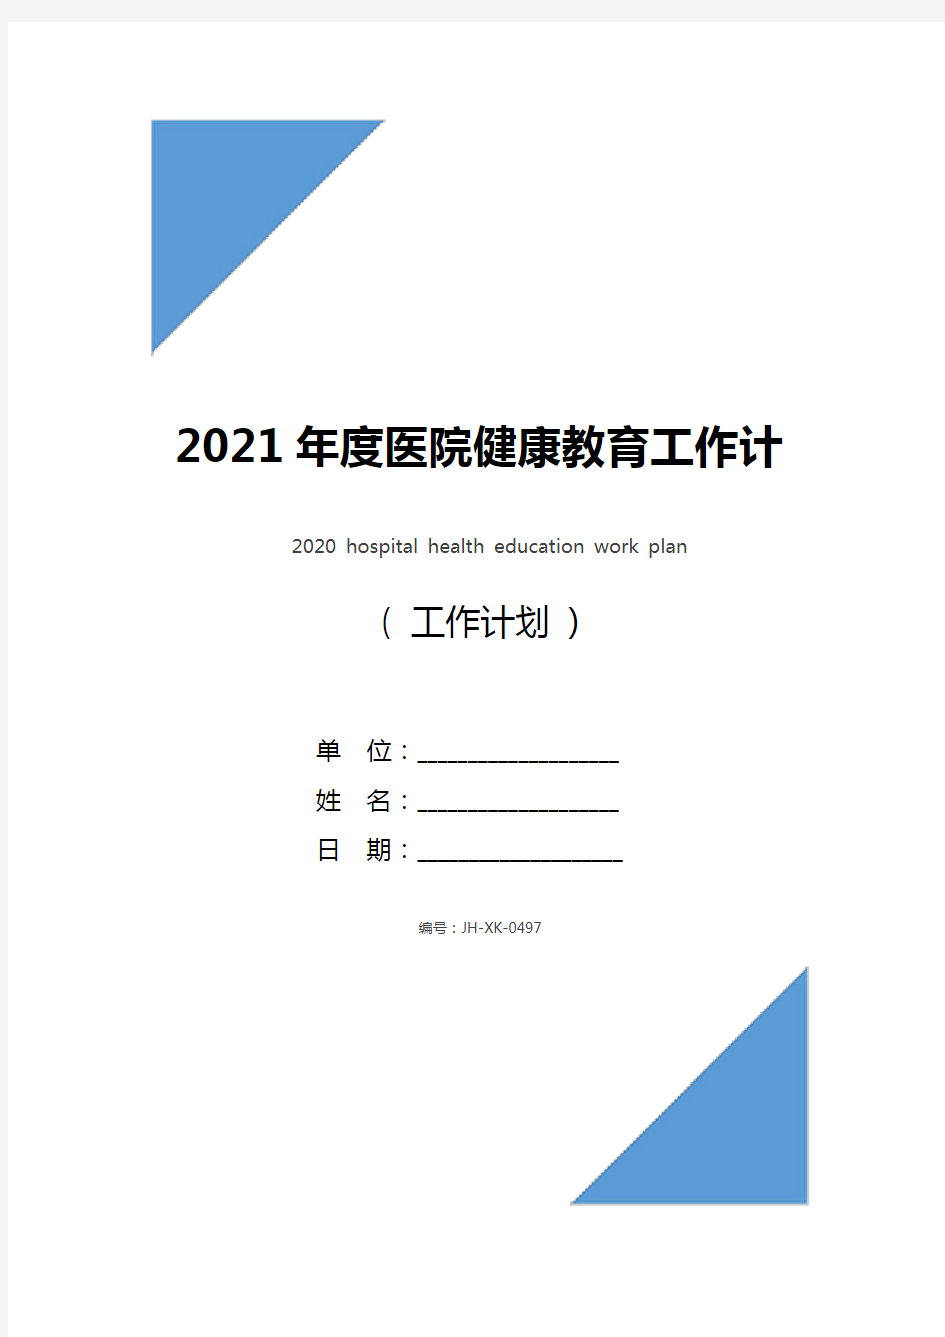 2021年度医院健康教育工作计划(标准版)